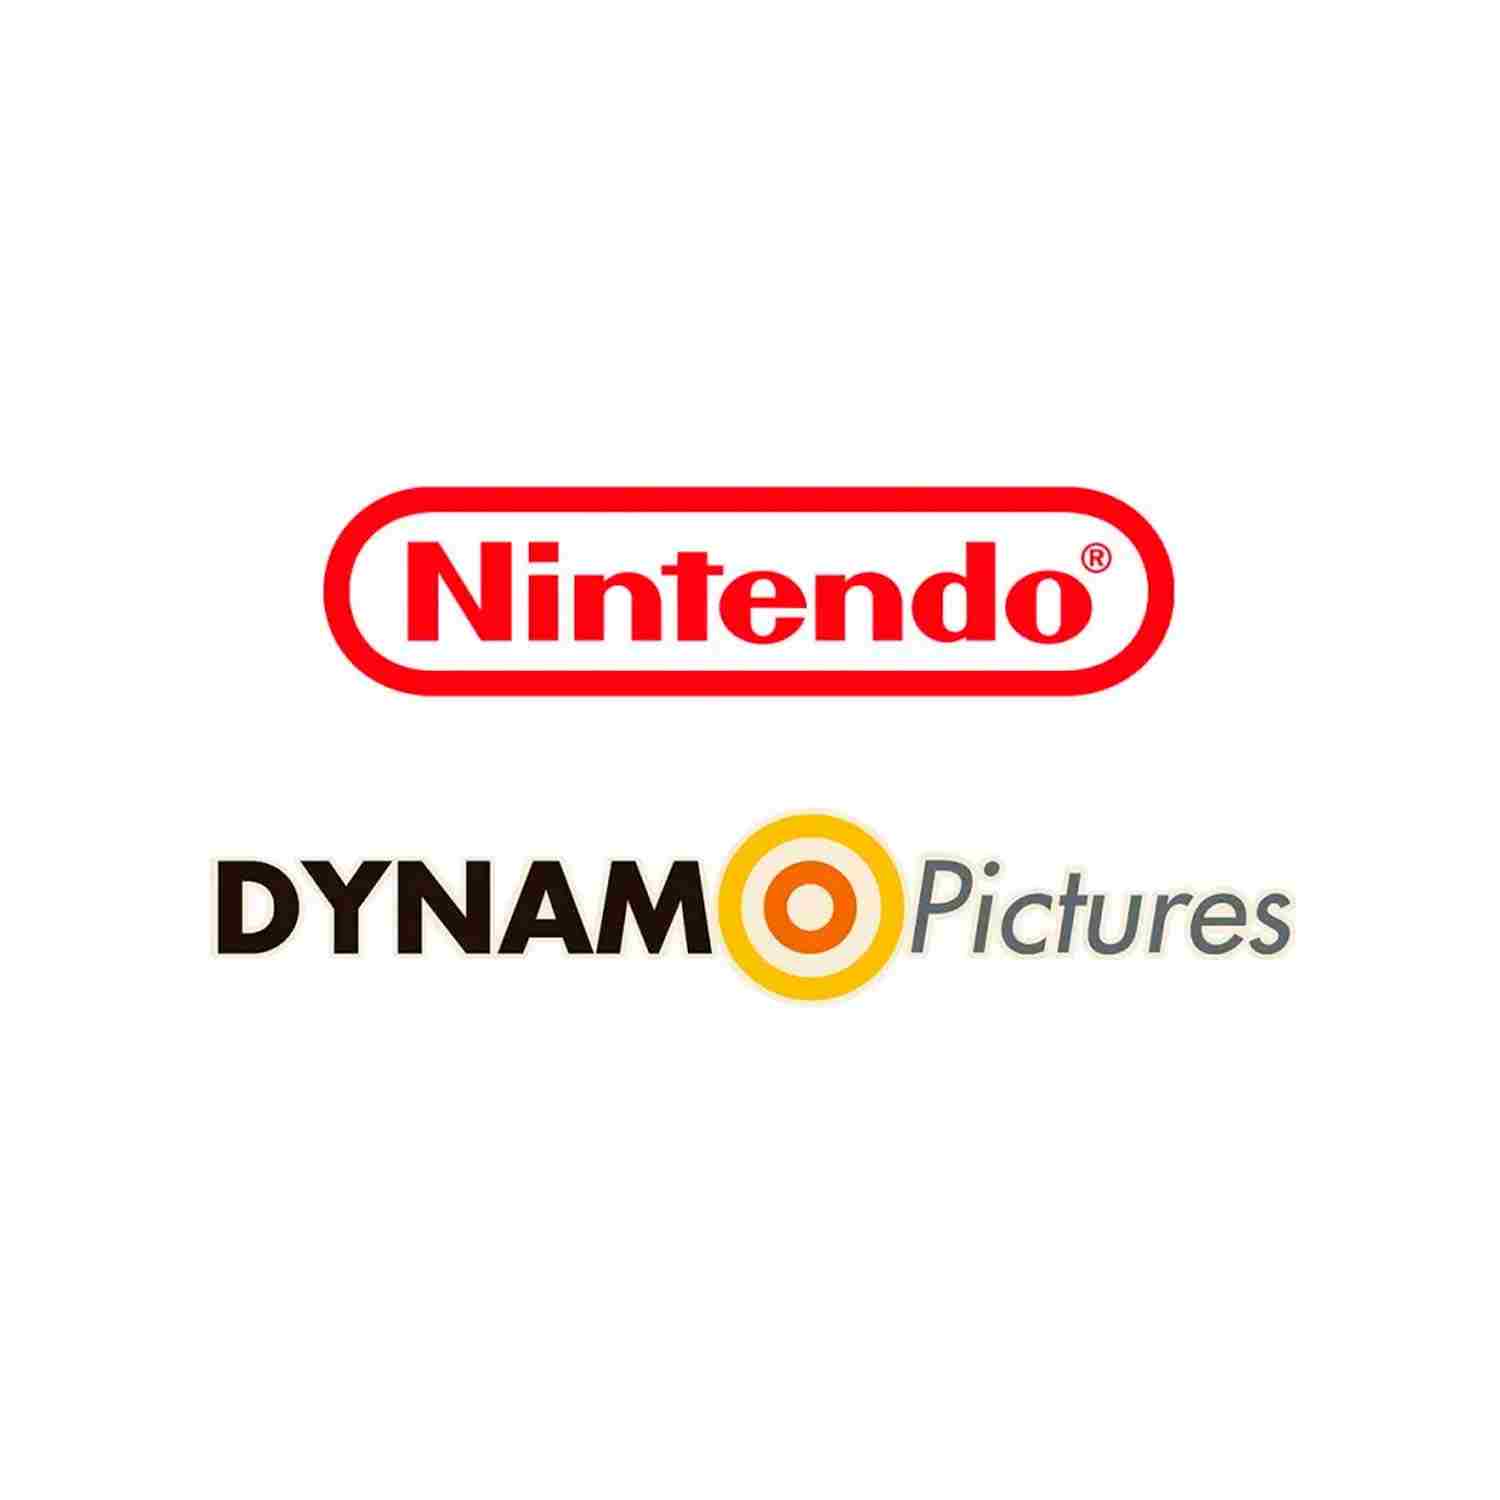 Nintendo se alista para lanzar su propio estudio de películas